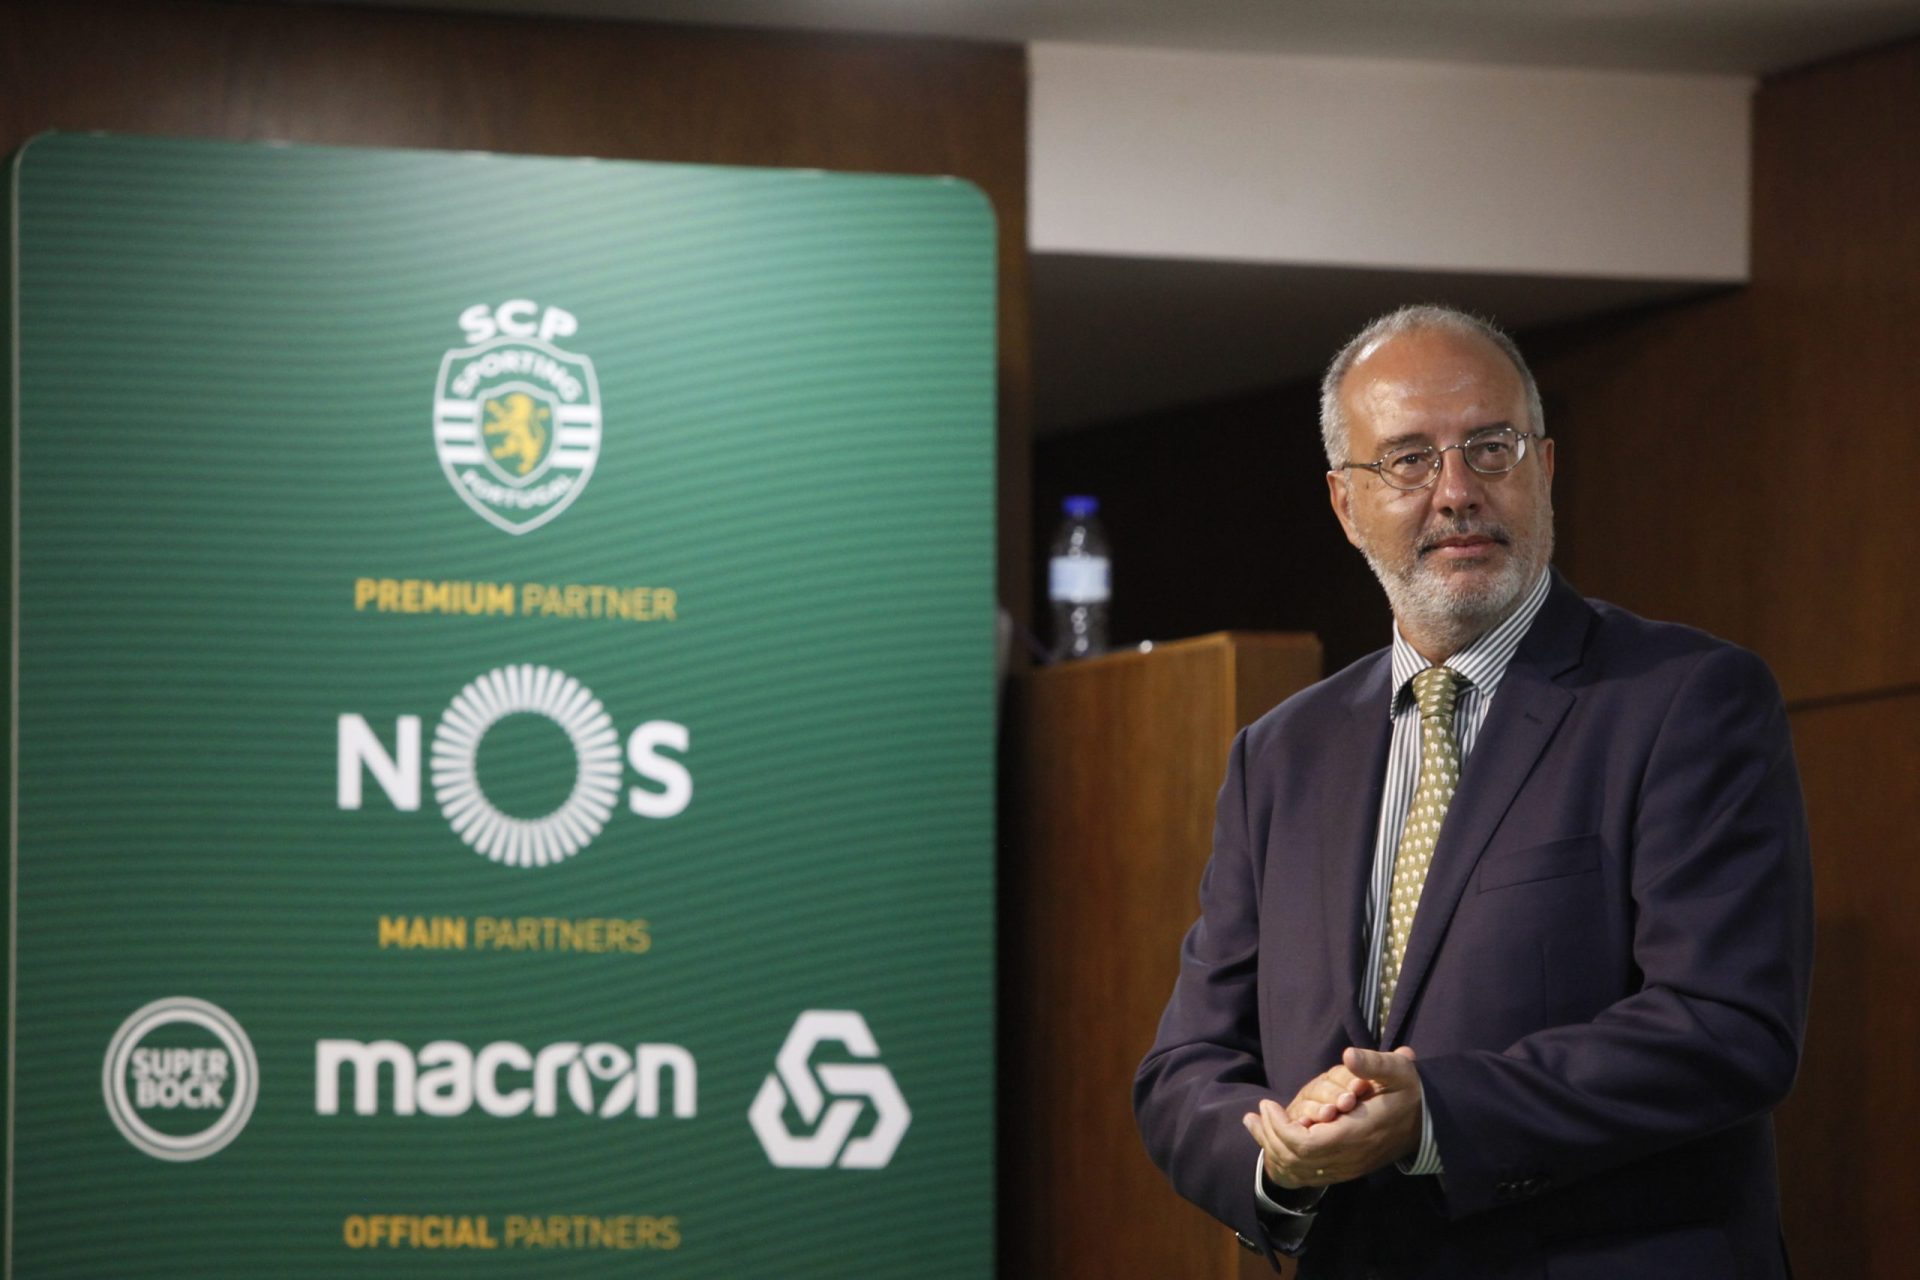 Assembleia Geral destitutiva do Sporting não vai avançar